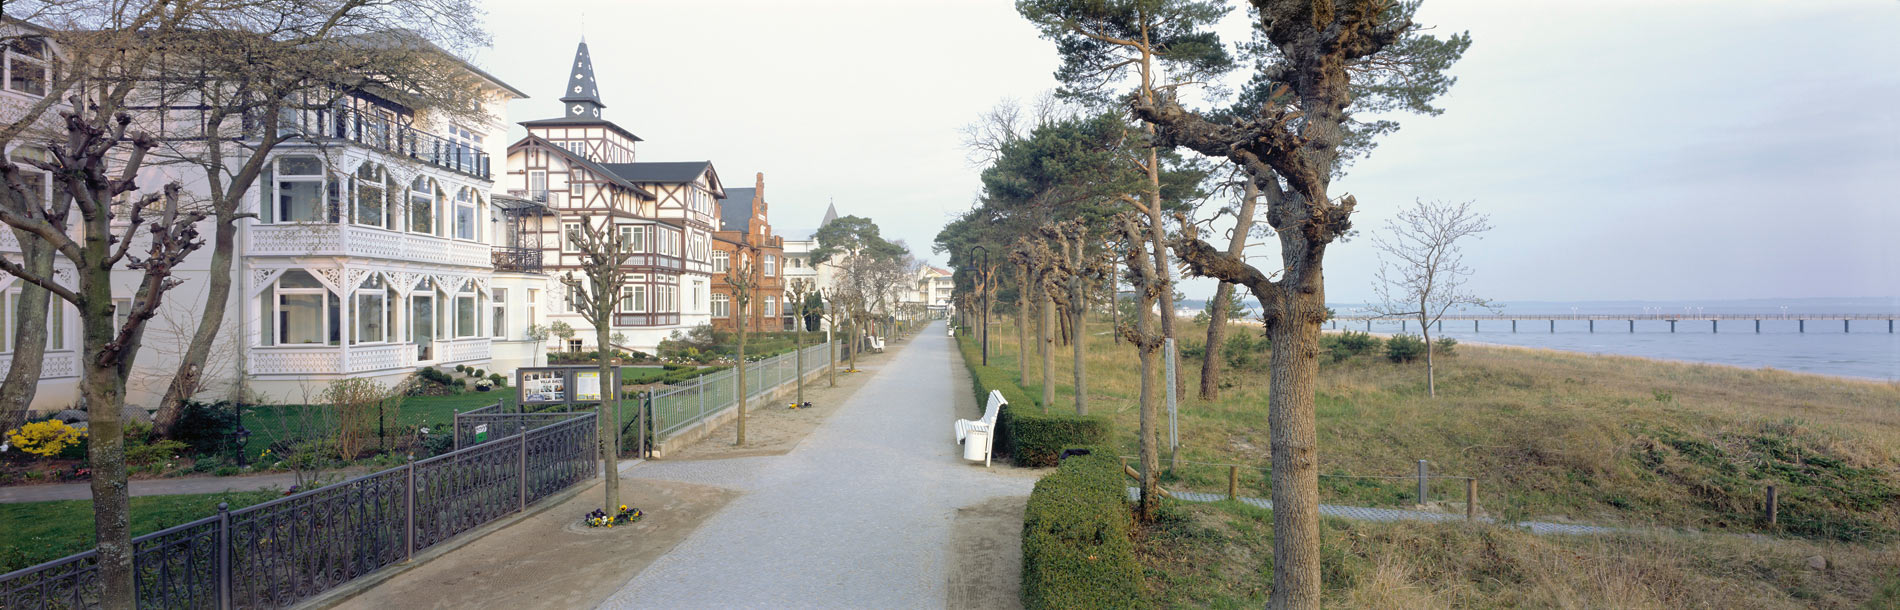 Promenade in Binz